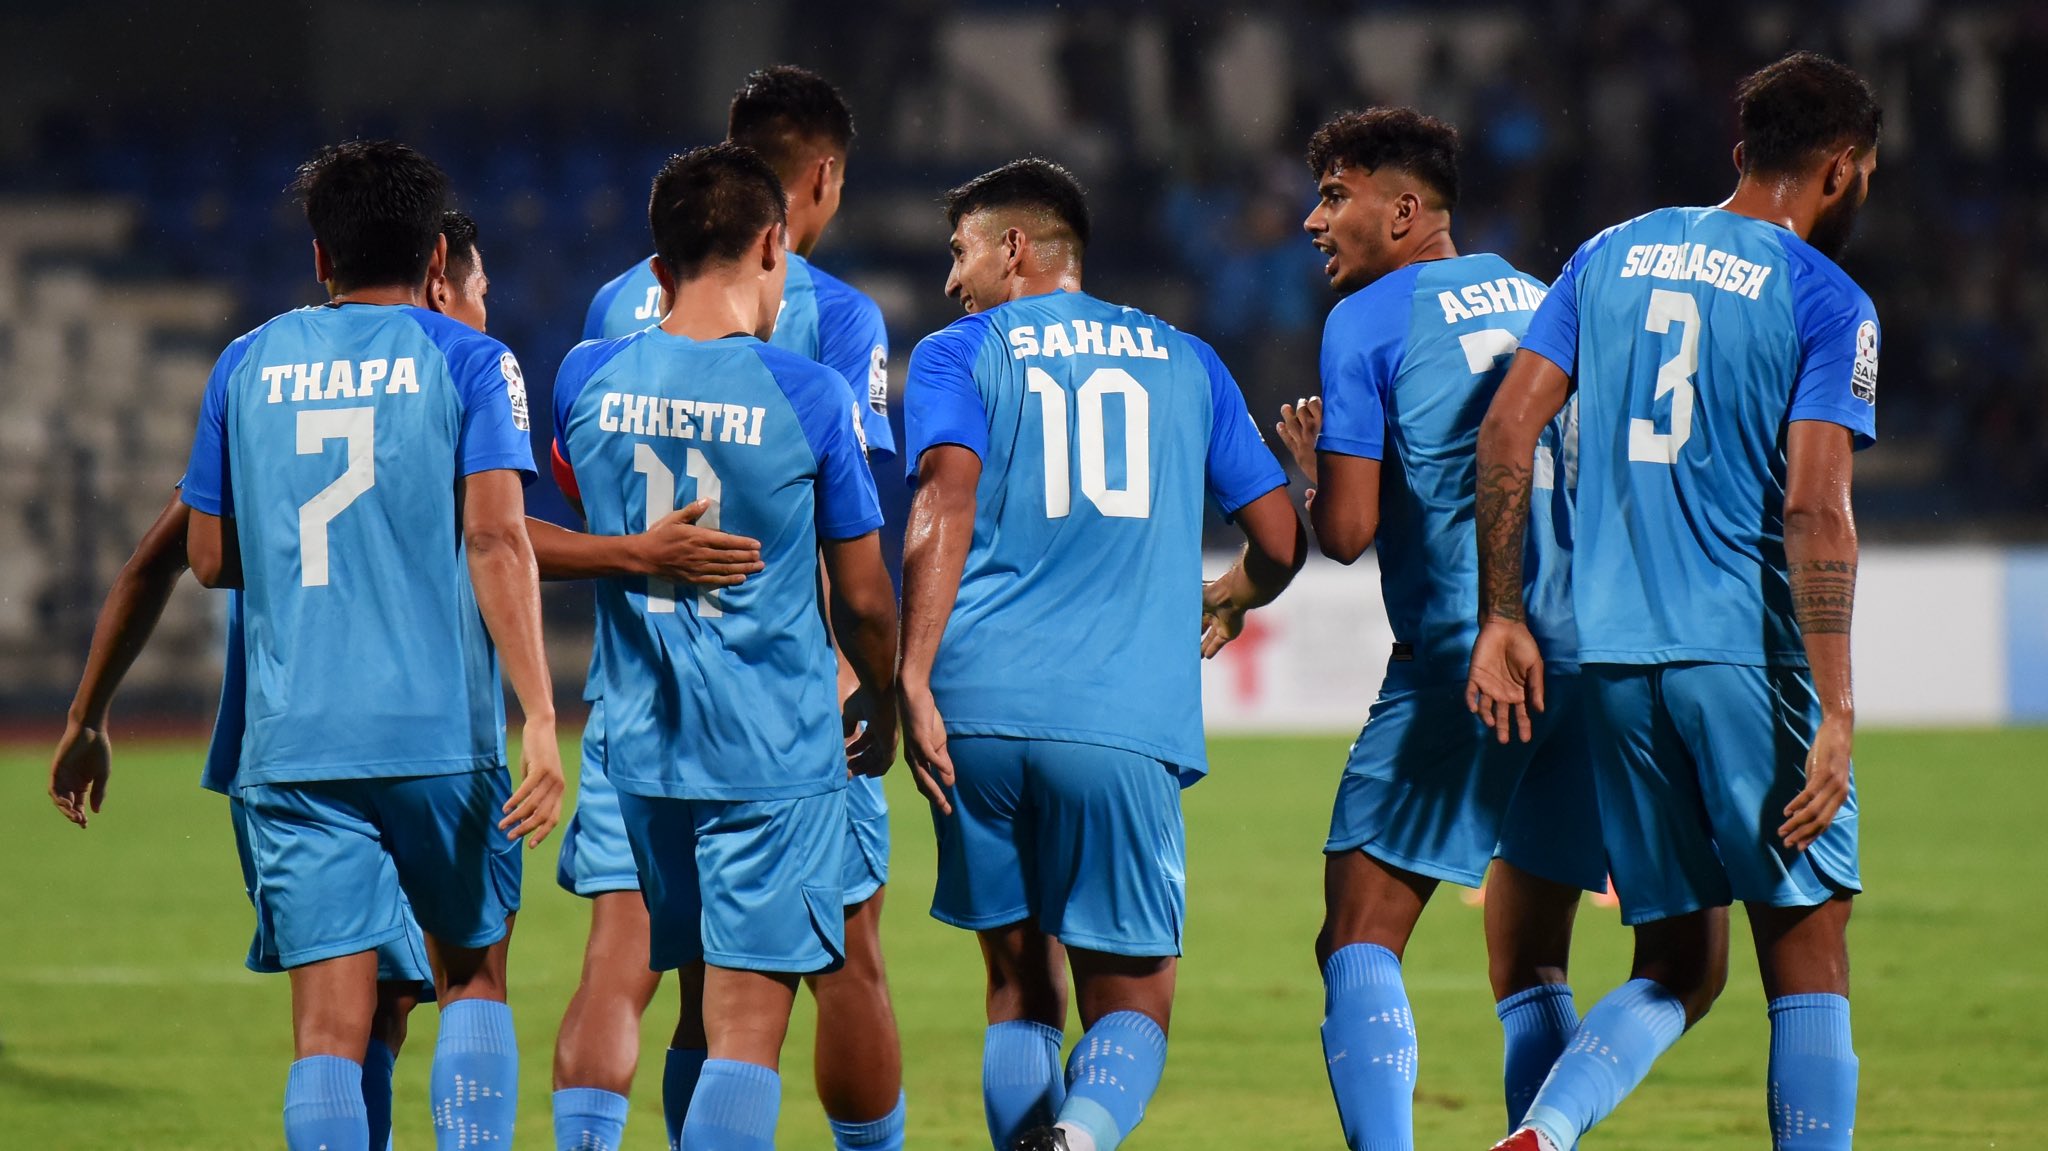 Ấn Độ vs Kuwait: Trận chung kết Giải vô địch SAFF 2023 sẽ là trận đấu lại của Đội tuyển bóng đá Ấn Độ do Sunil Chhetri dẫn dắt vì công việc còn dang dở